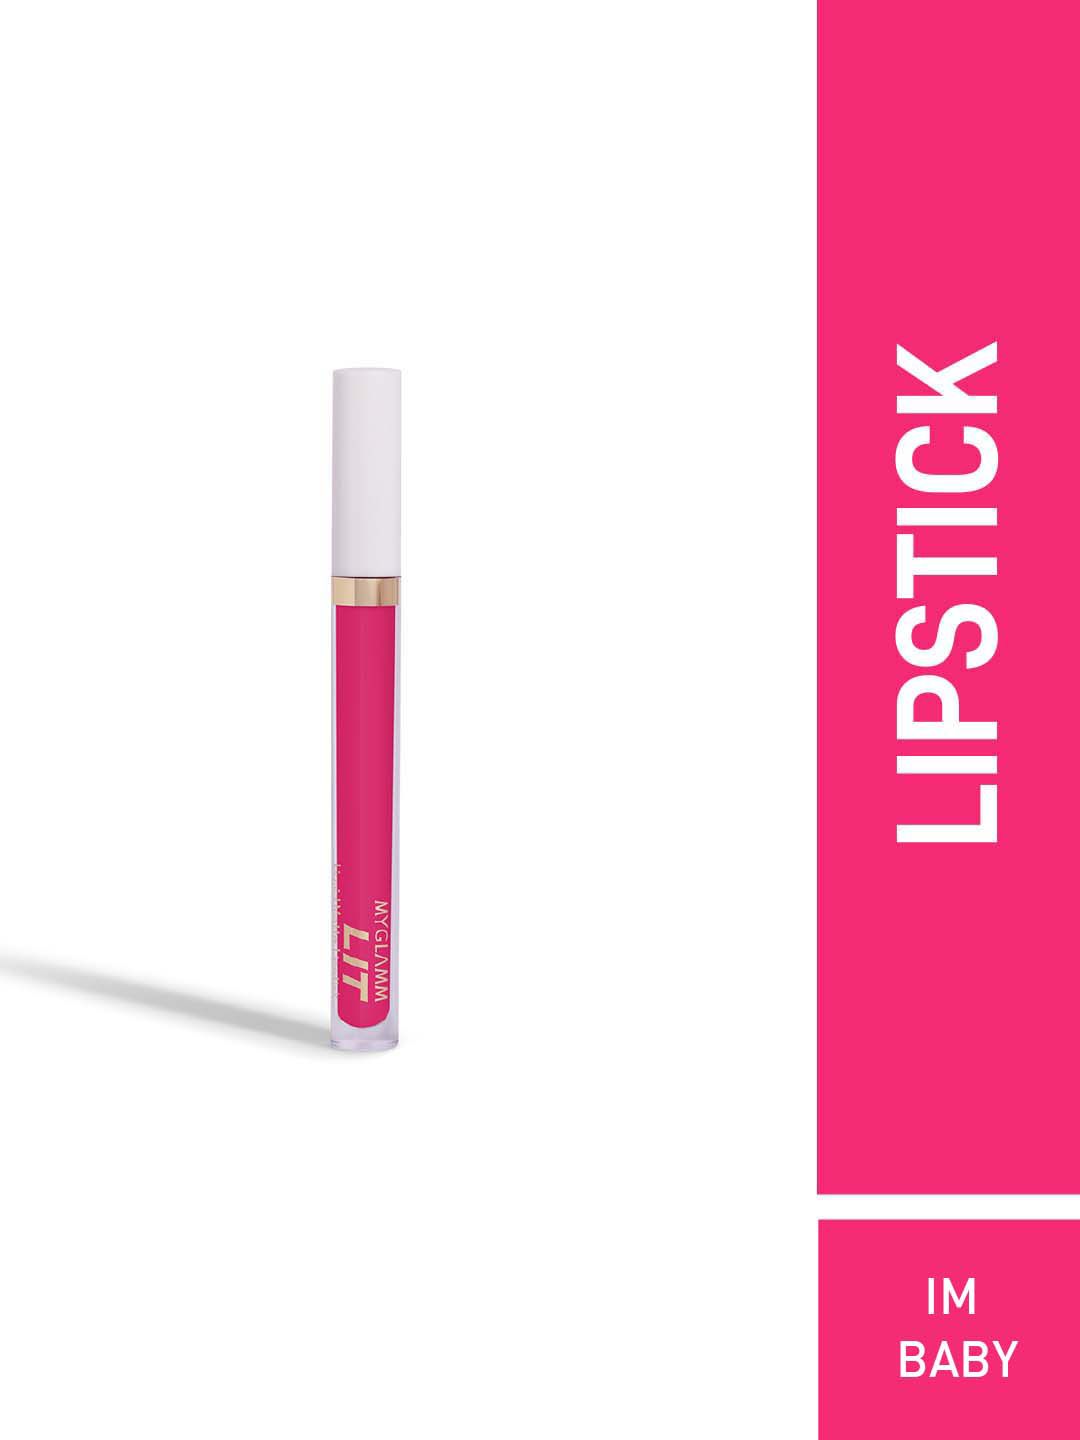 MyGlamm LIT Liquid Matte Lipstick 3 ml - Im Baby Price in India